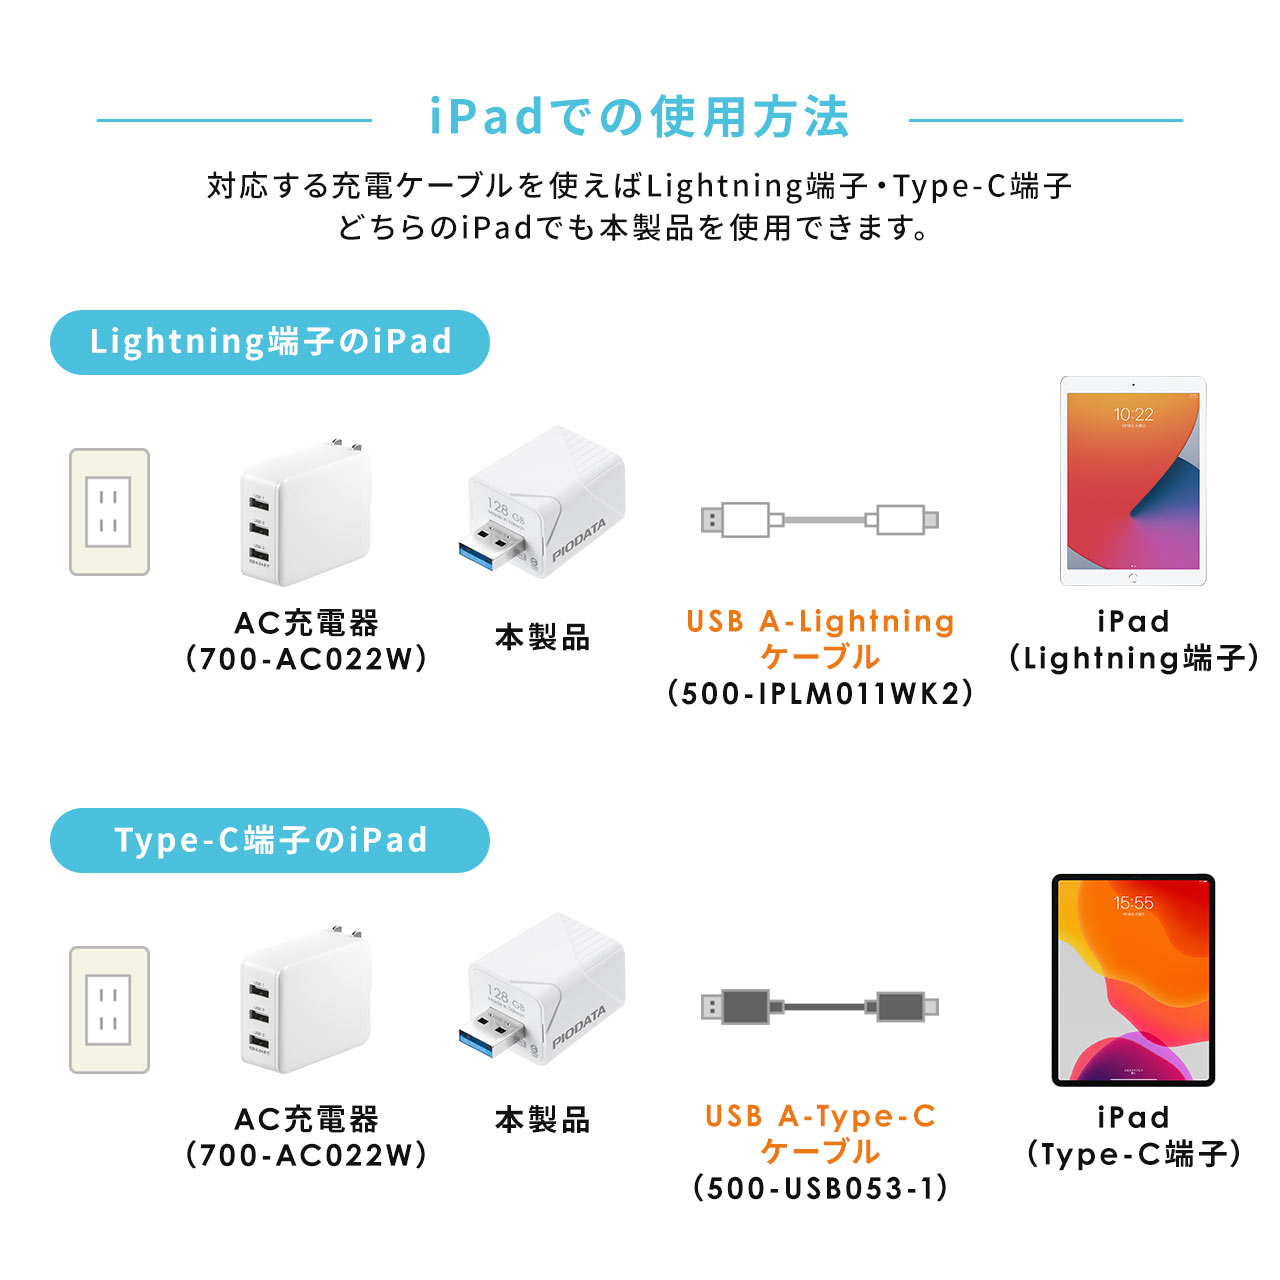 【メモリセール】iPhone iPad バックアップ USBメモリ 128GB MFi認証  USB3.2 Gen1(USB3.1/3.0) 600-IPLA128GB3